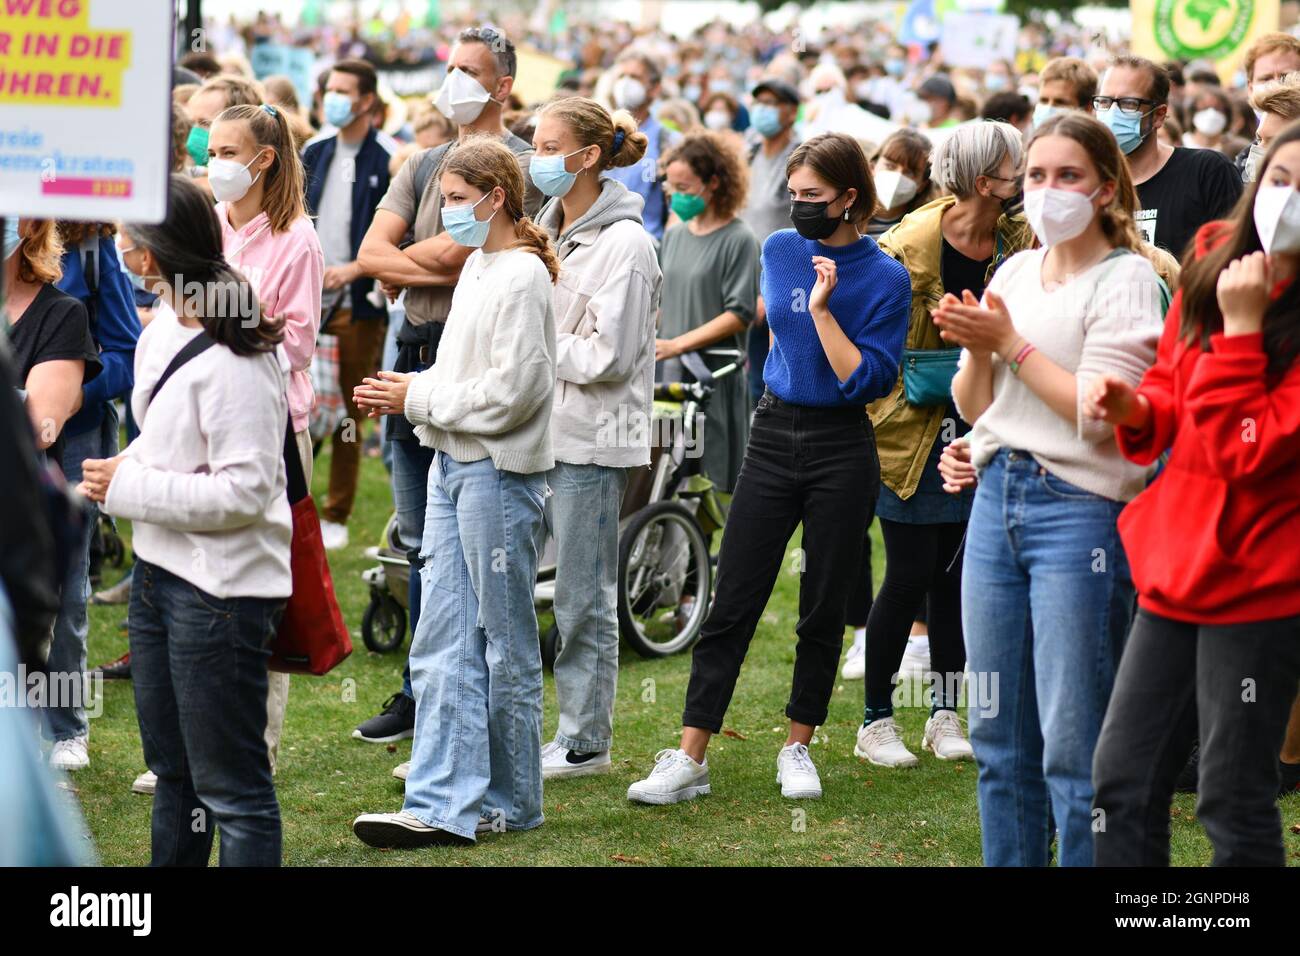 Heidelberg, Germania - 24 settembre 2021: I giovani che partecipano alla manifestazione Global Climate Strike con maschere facciali durante la crisi del virus Corona Foto Stock